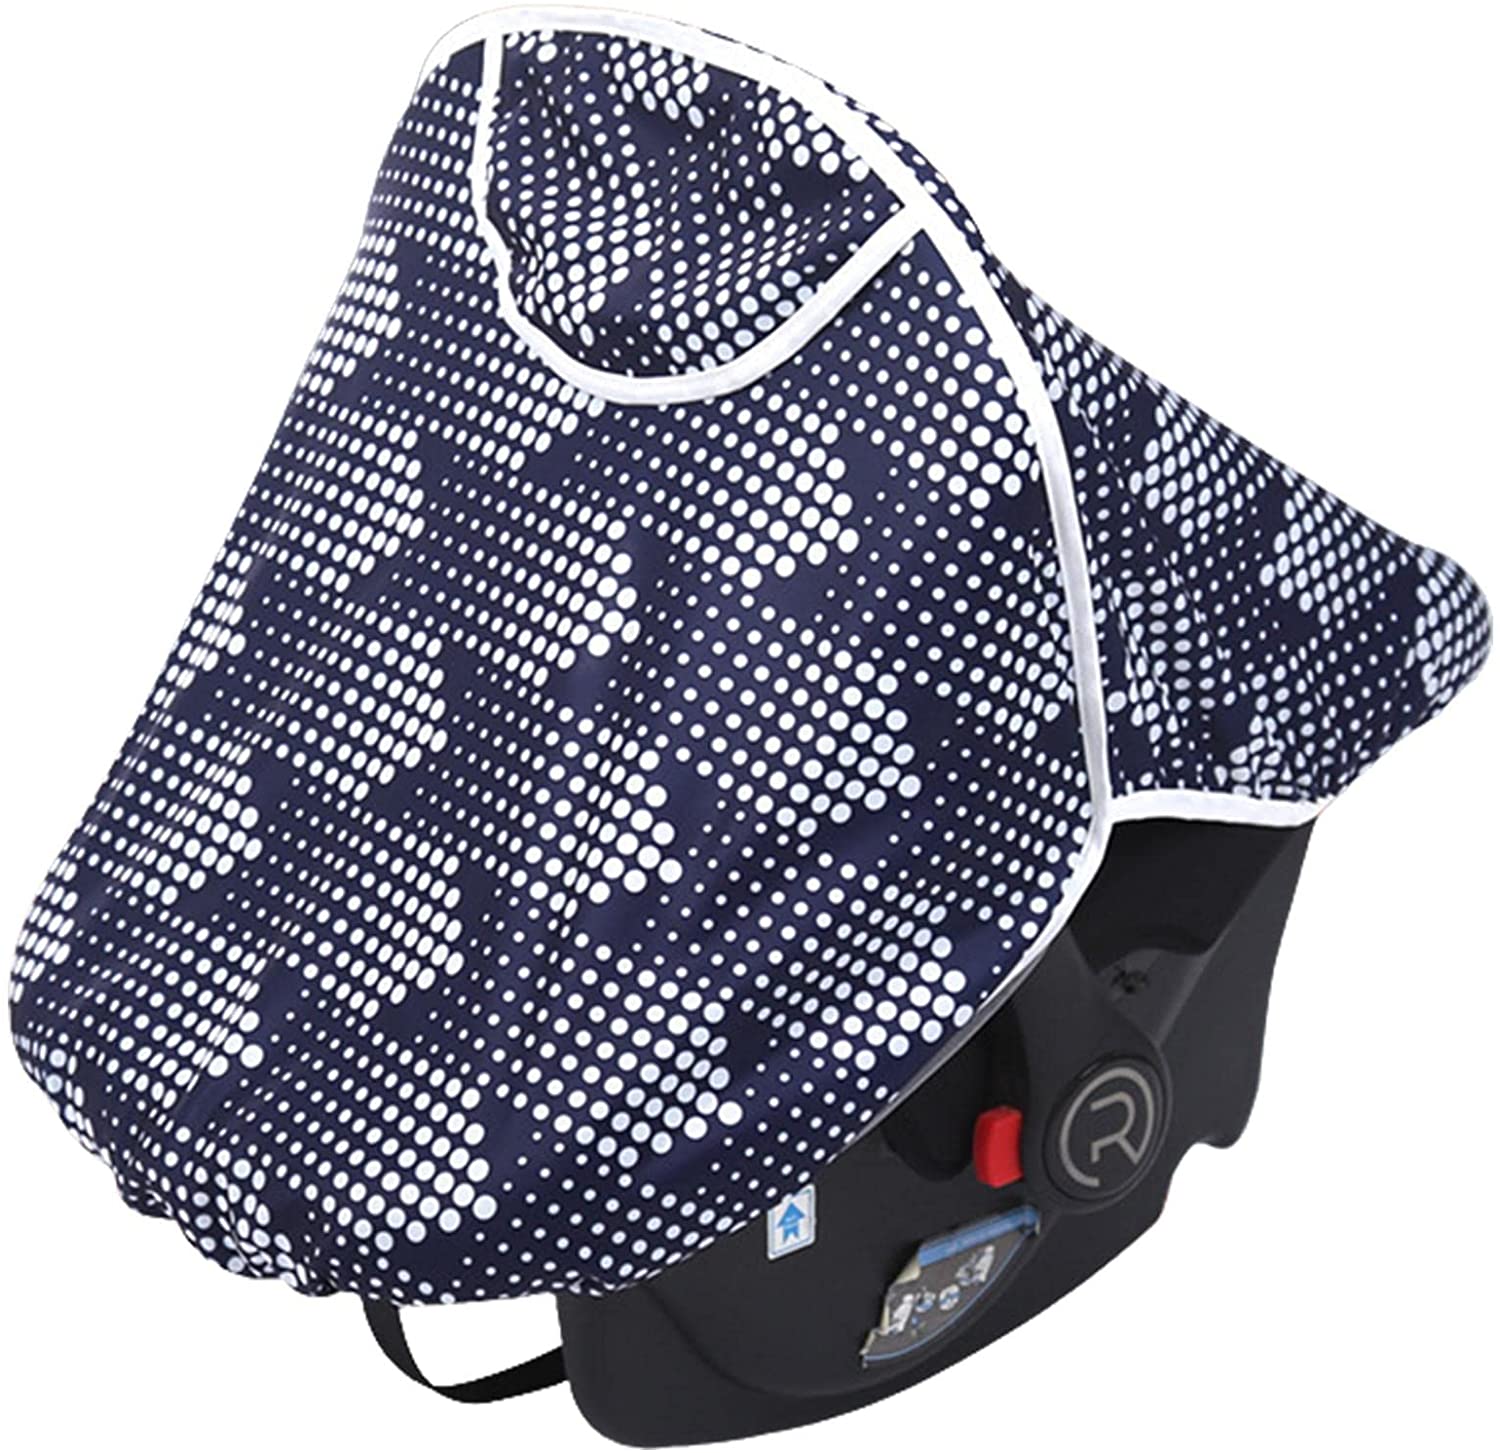 Jatour Baby Autositz Regenschutz, Leicht Wasserdicht Winddicht Babys Autositzschutz Atmungsaktiv Babyschale Kinderwagen Verdeckbezug für Baby Kleinkind Kind